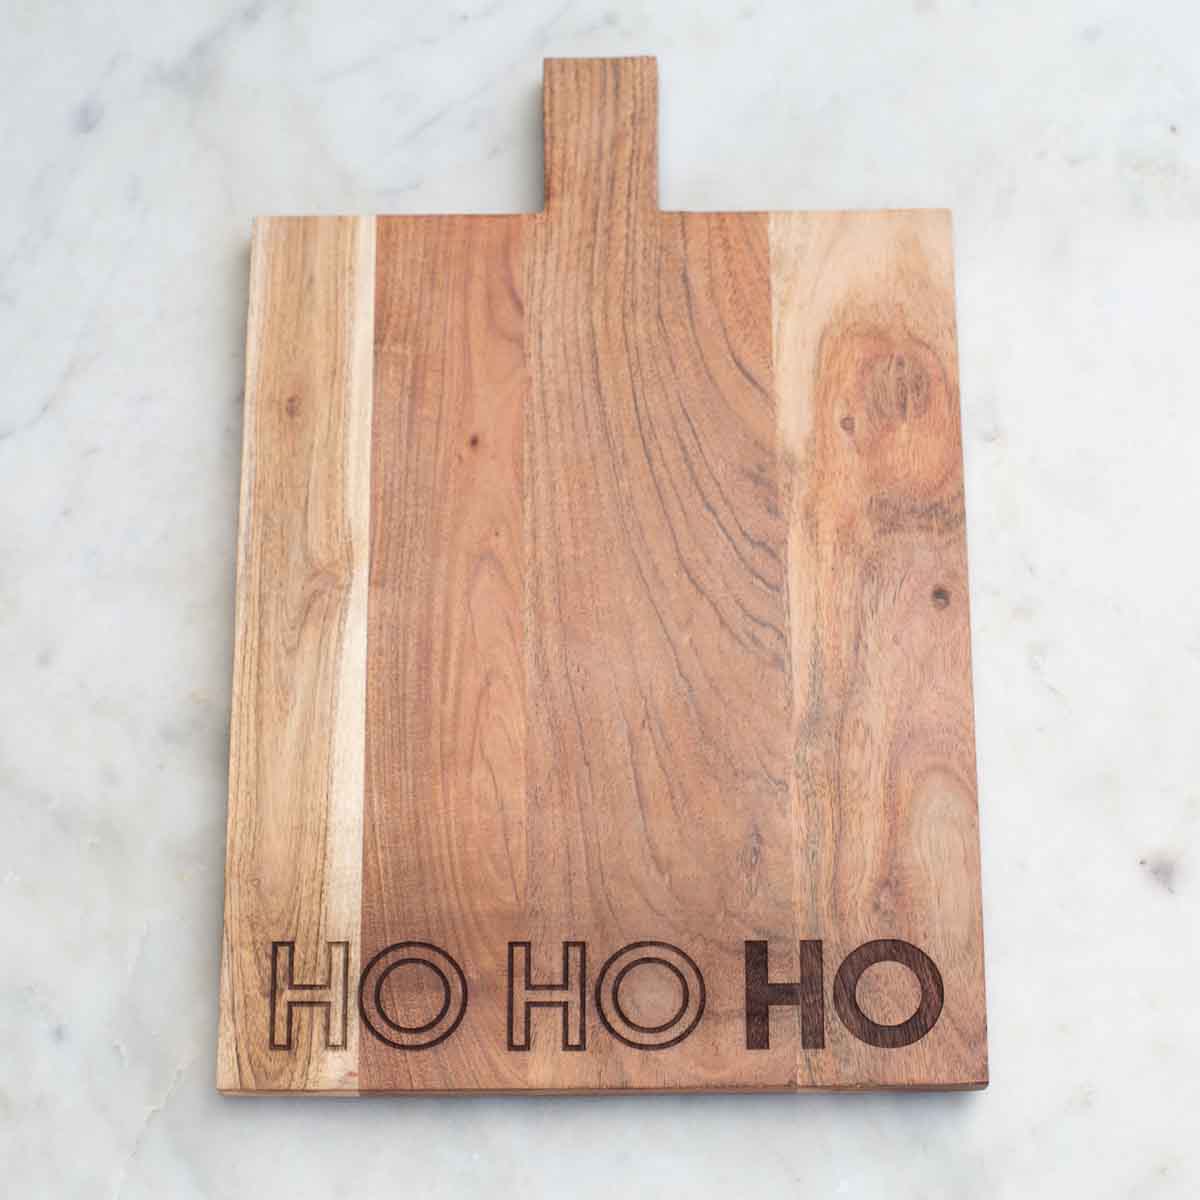 HoHoHo Serving Board